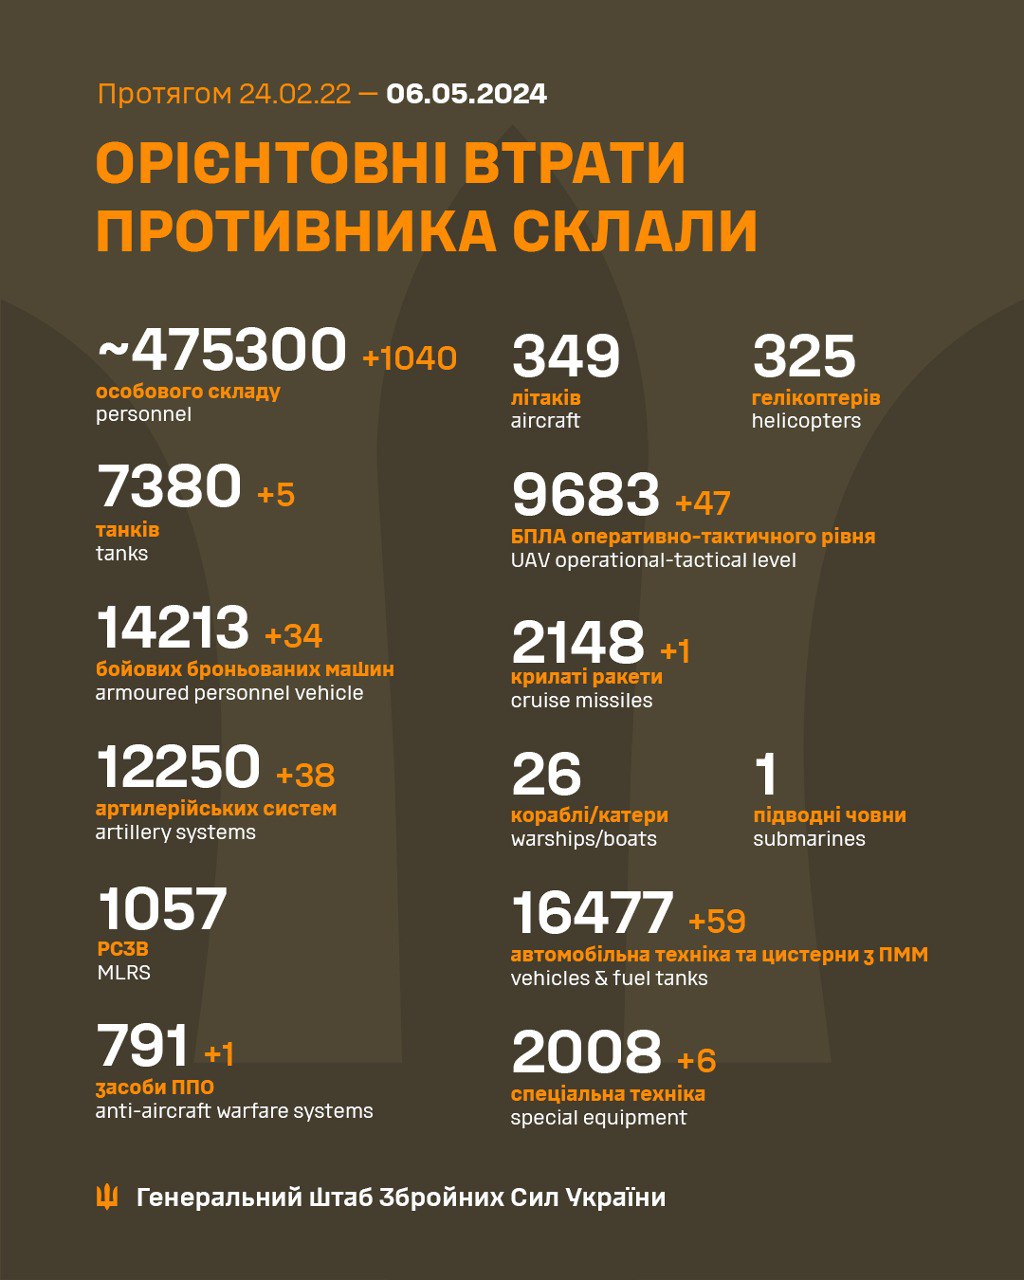 Еще 38 артсистем и более тысячи захватчиков: Генштаб ВСУ обновил потери росармии в Украине